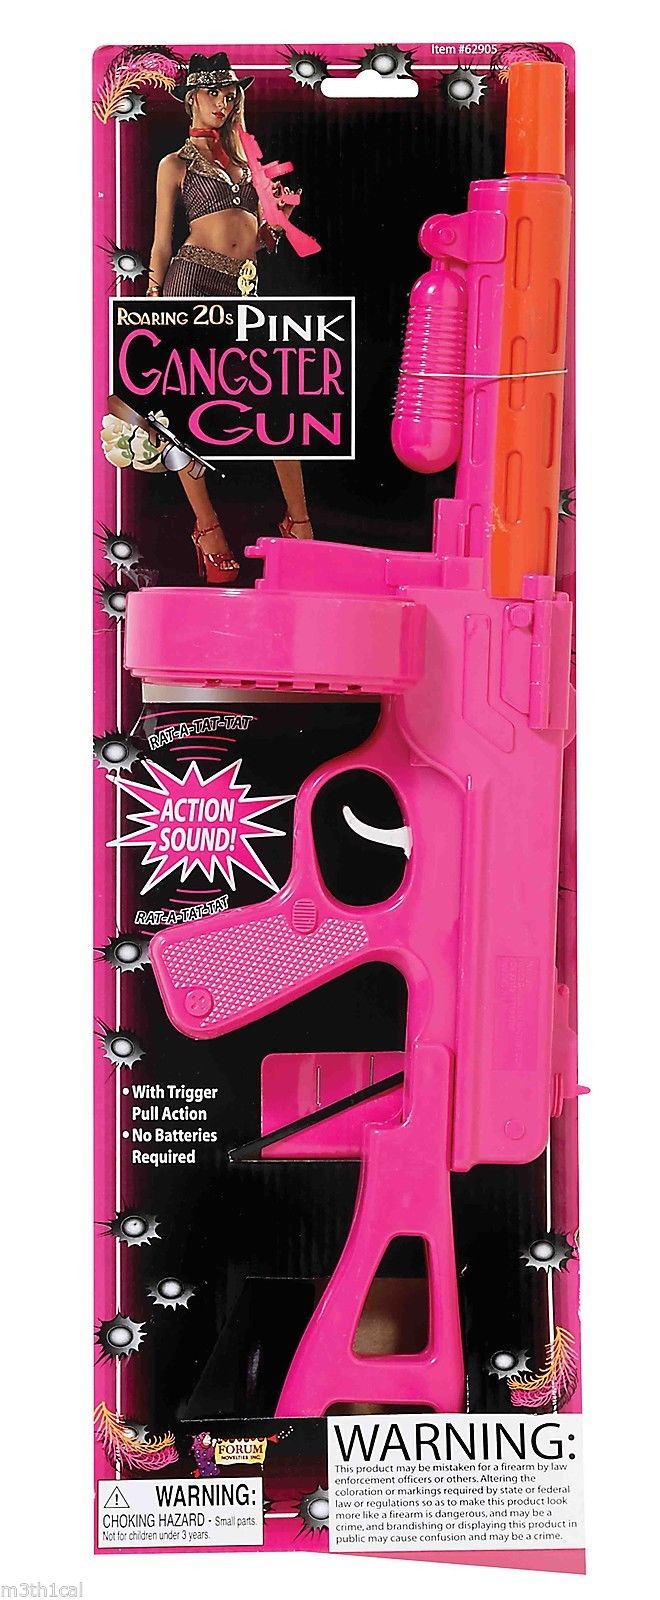 pink toy machine gun